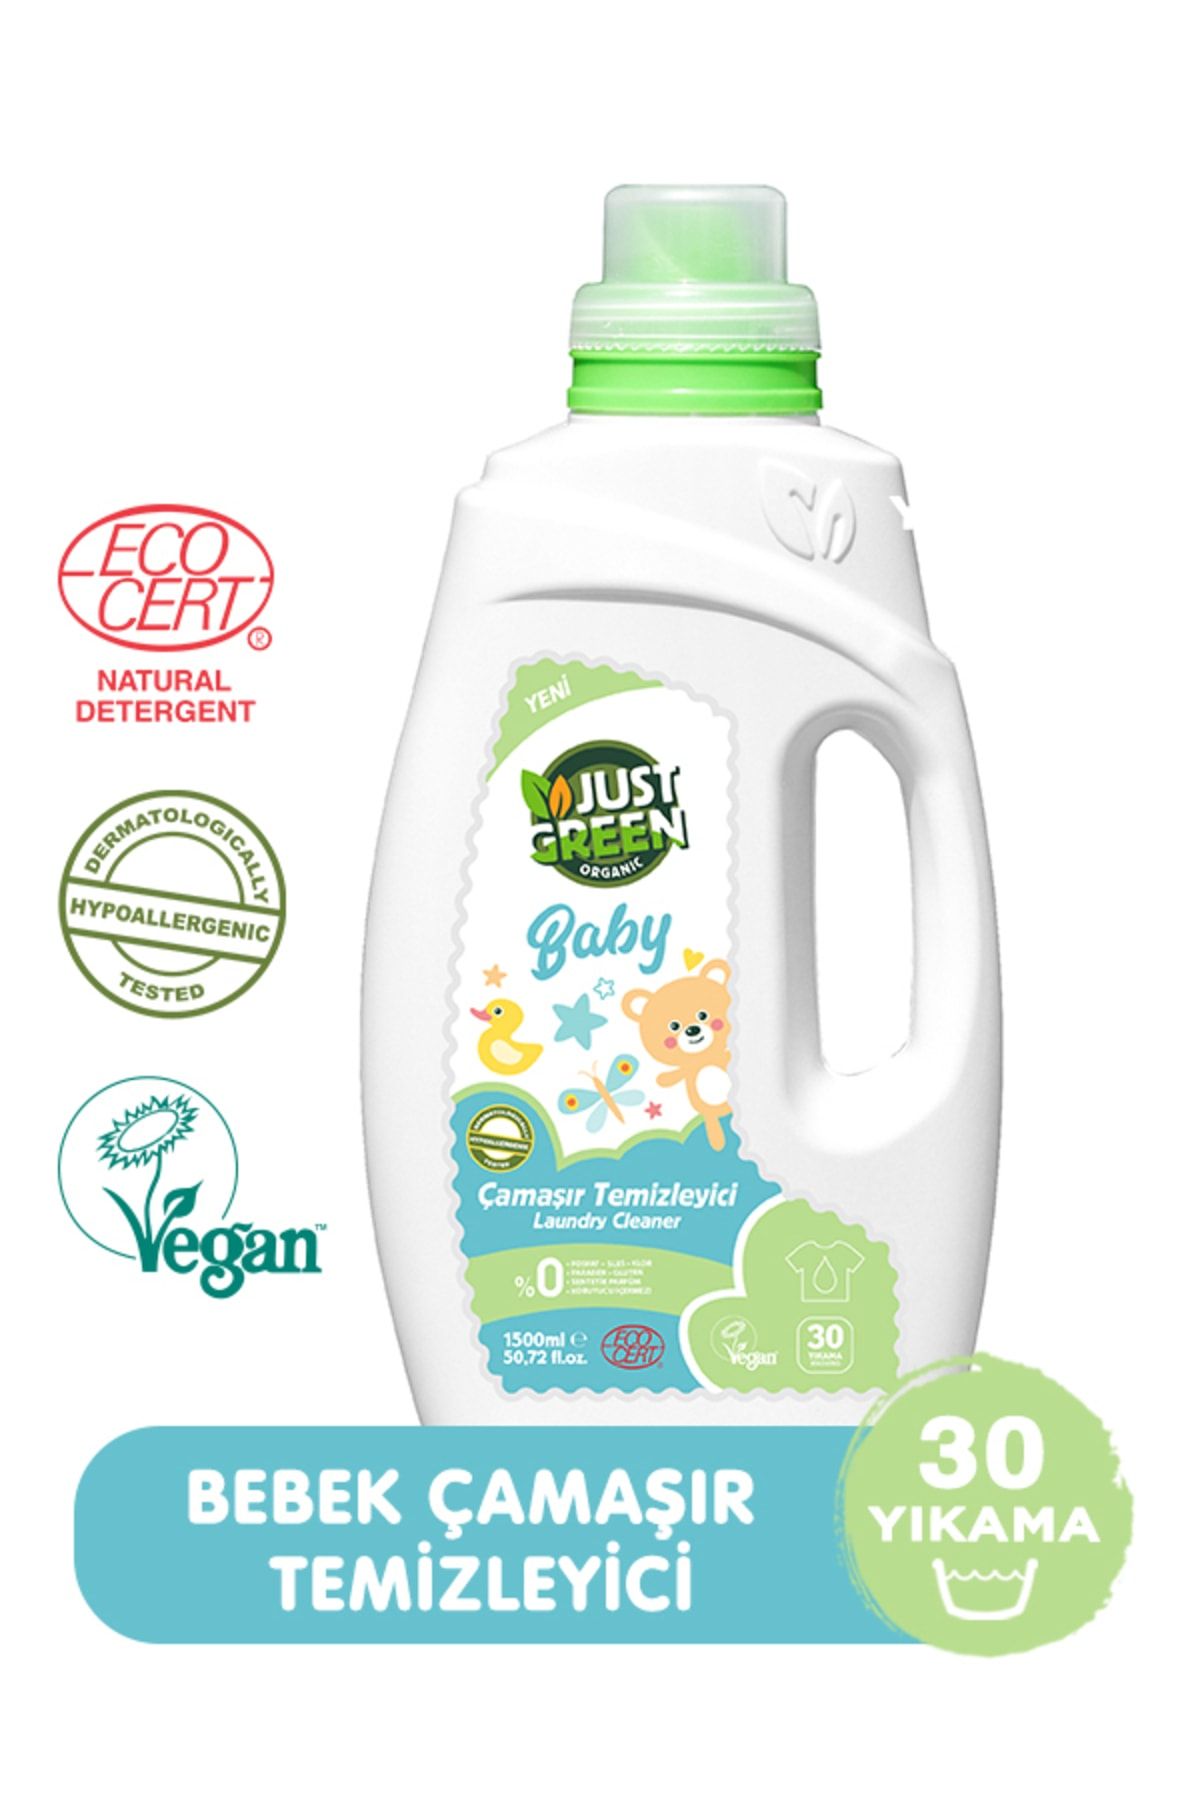 Just Green Organic Baby 30 Yıkama 1500 ml Bebek Çamaşır Deterjanı